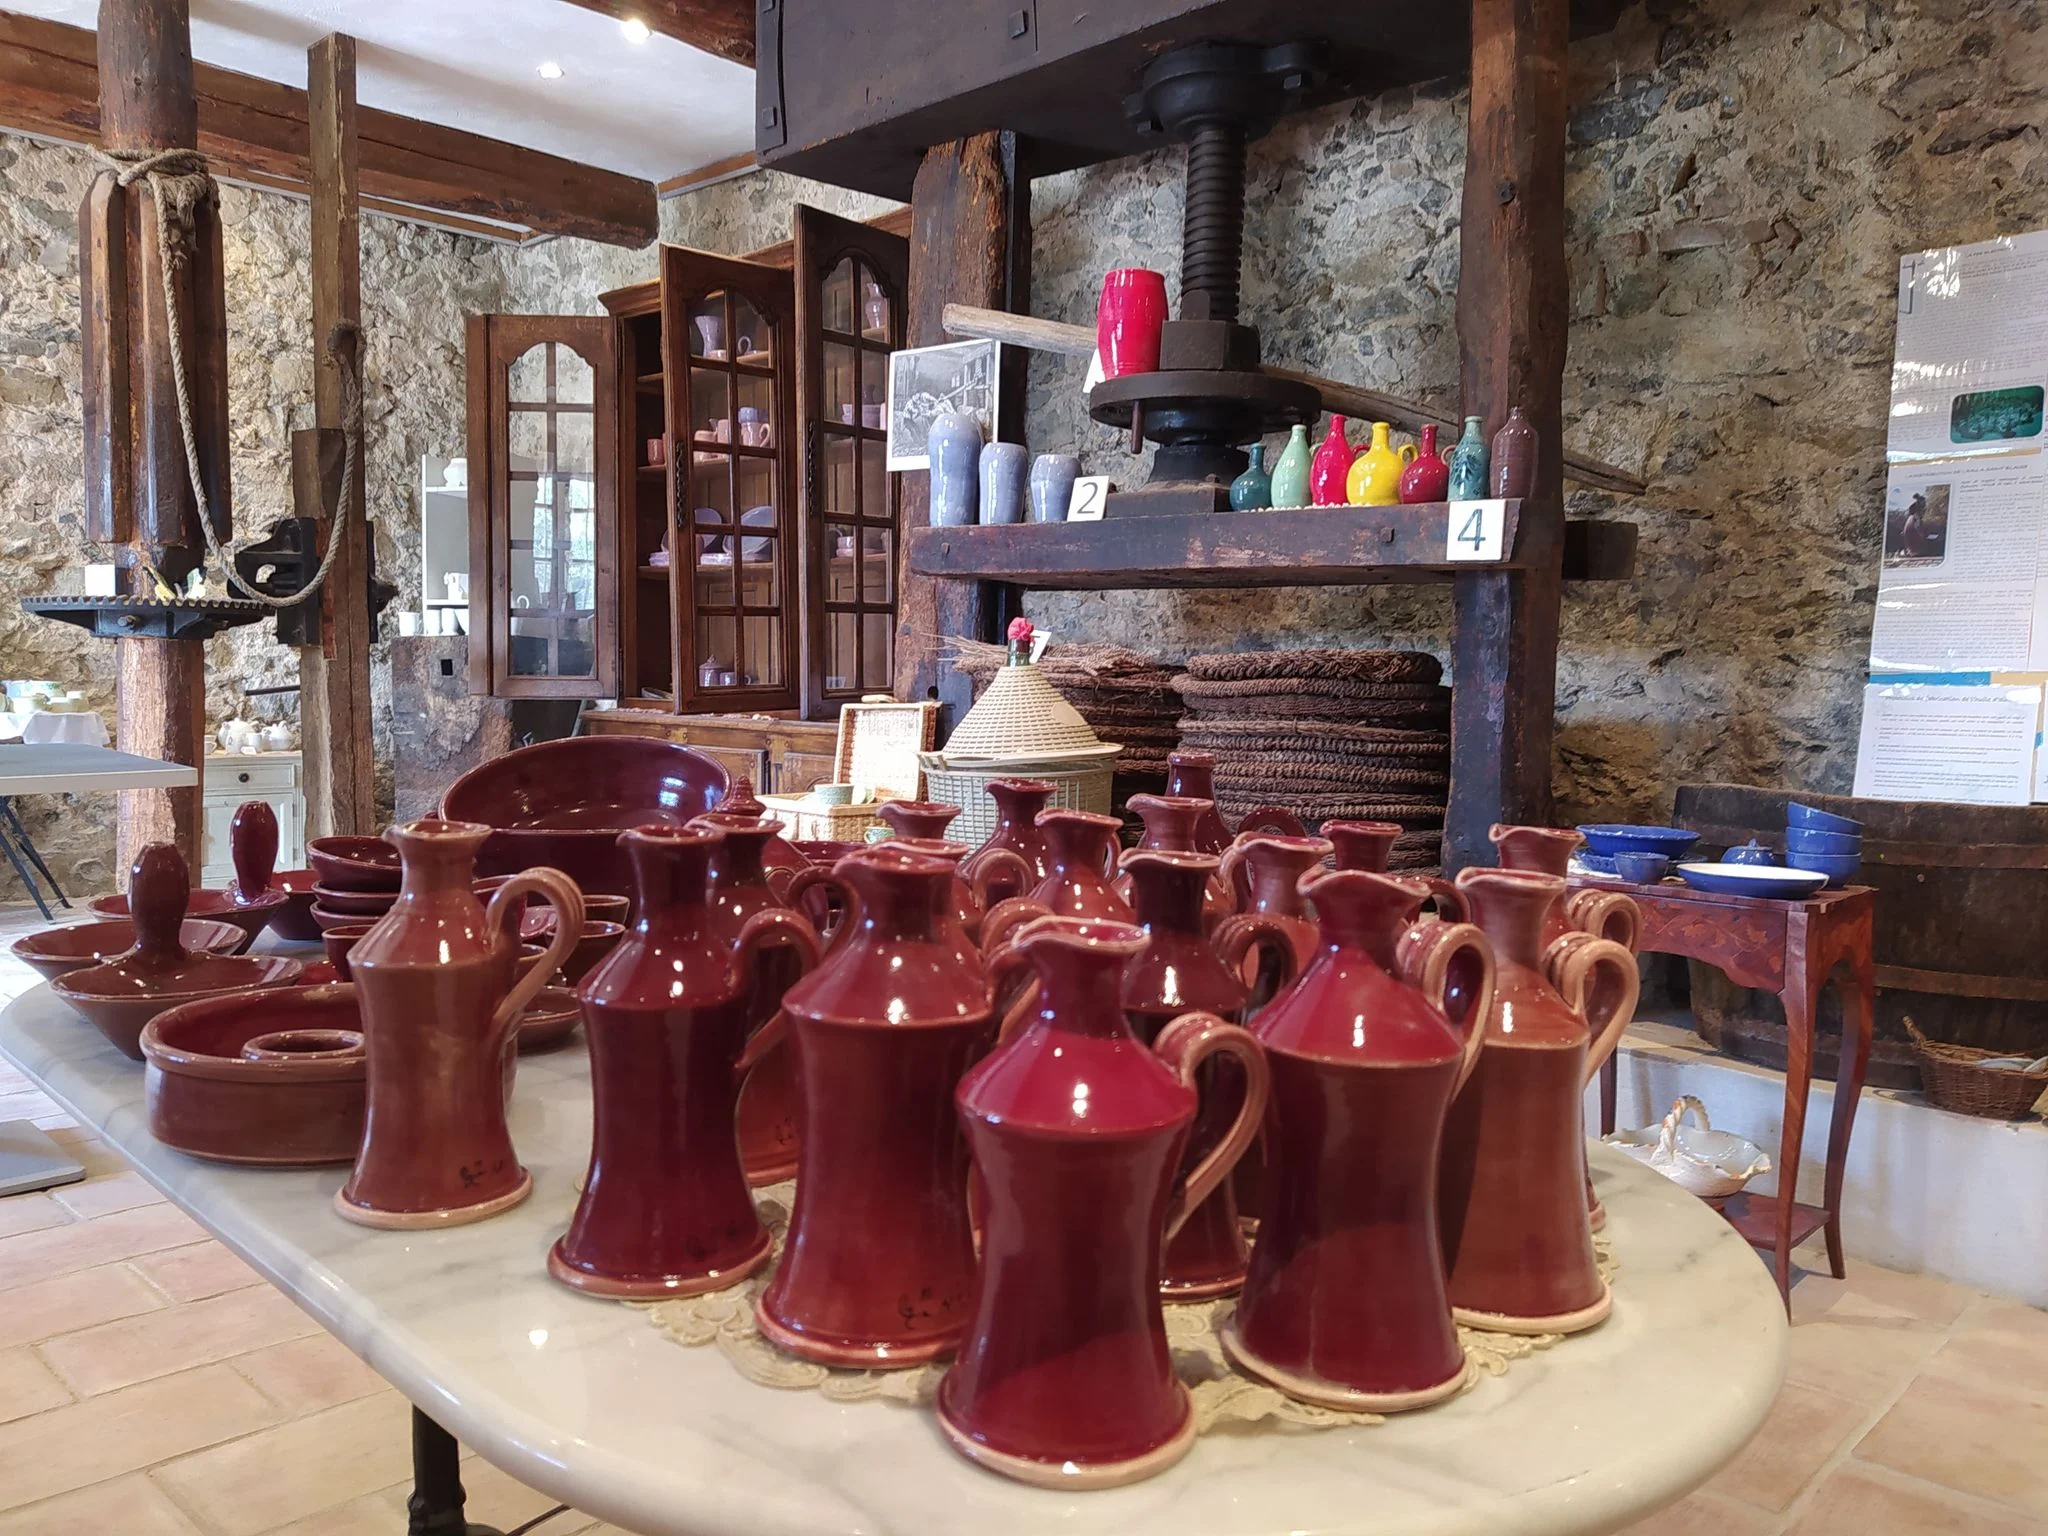 RRGUITI Ceramic France - Fabrication artisanale de céramique made